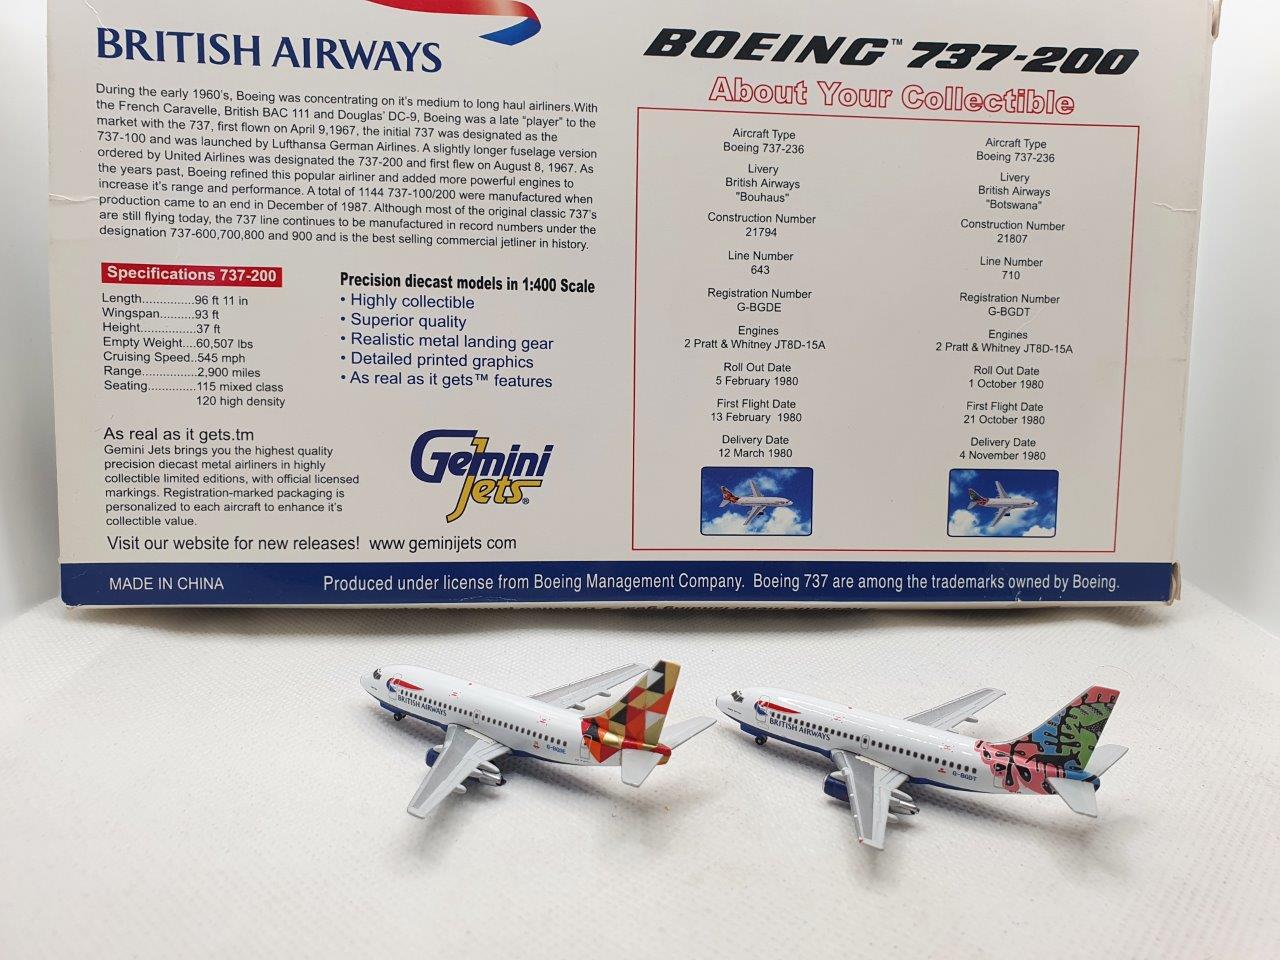 BRITISH AIRWAYS Bauhaus Tail Boeing 737-200 Metal Model 1:400 Scale Gemini Jets